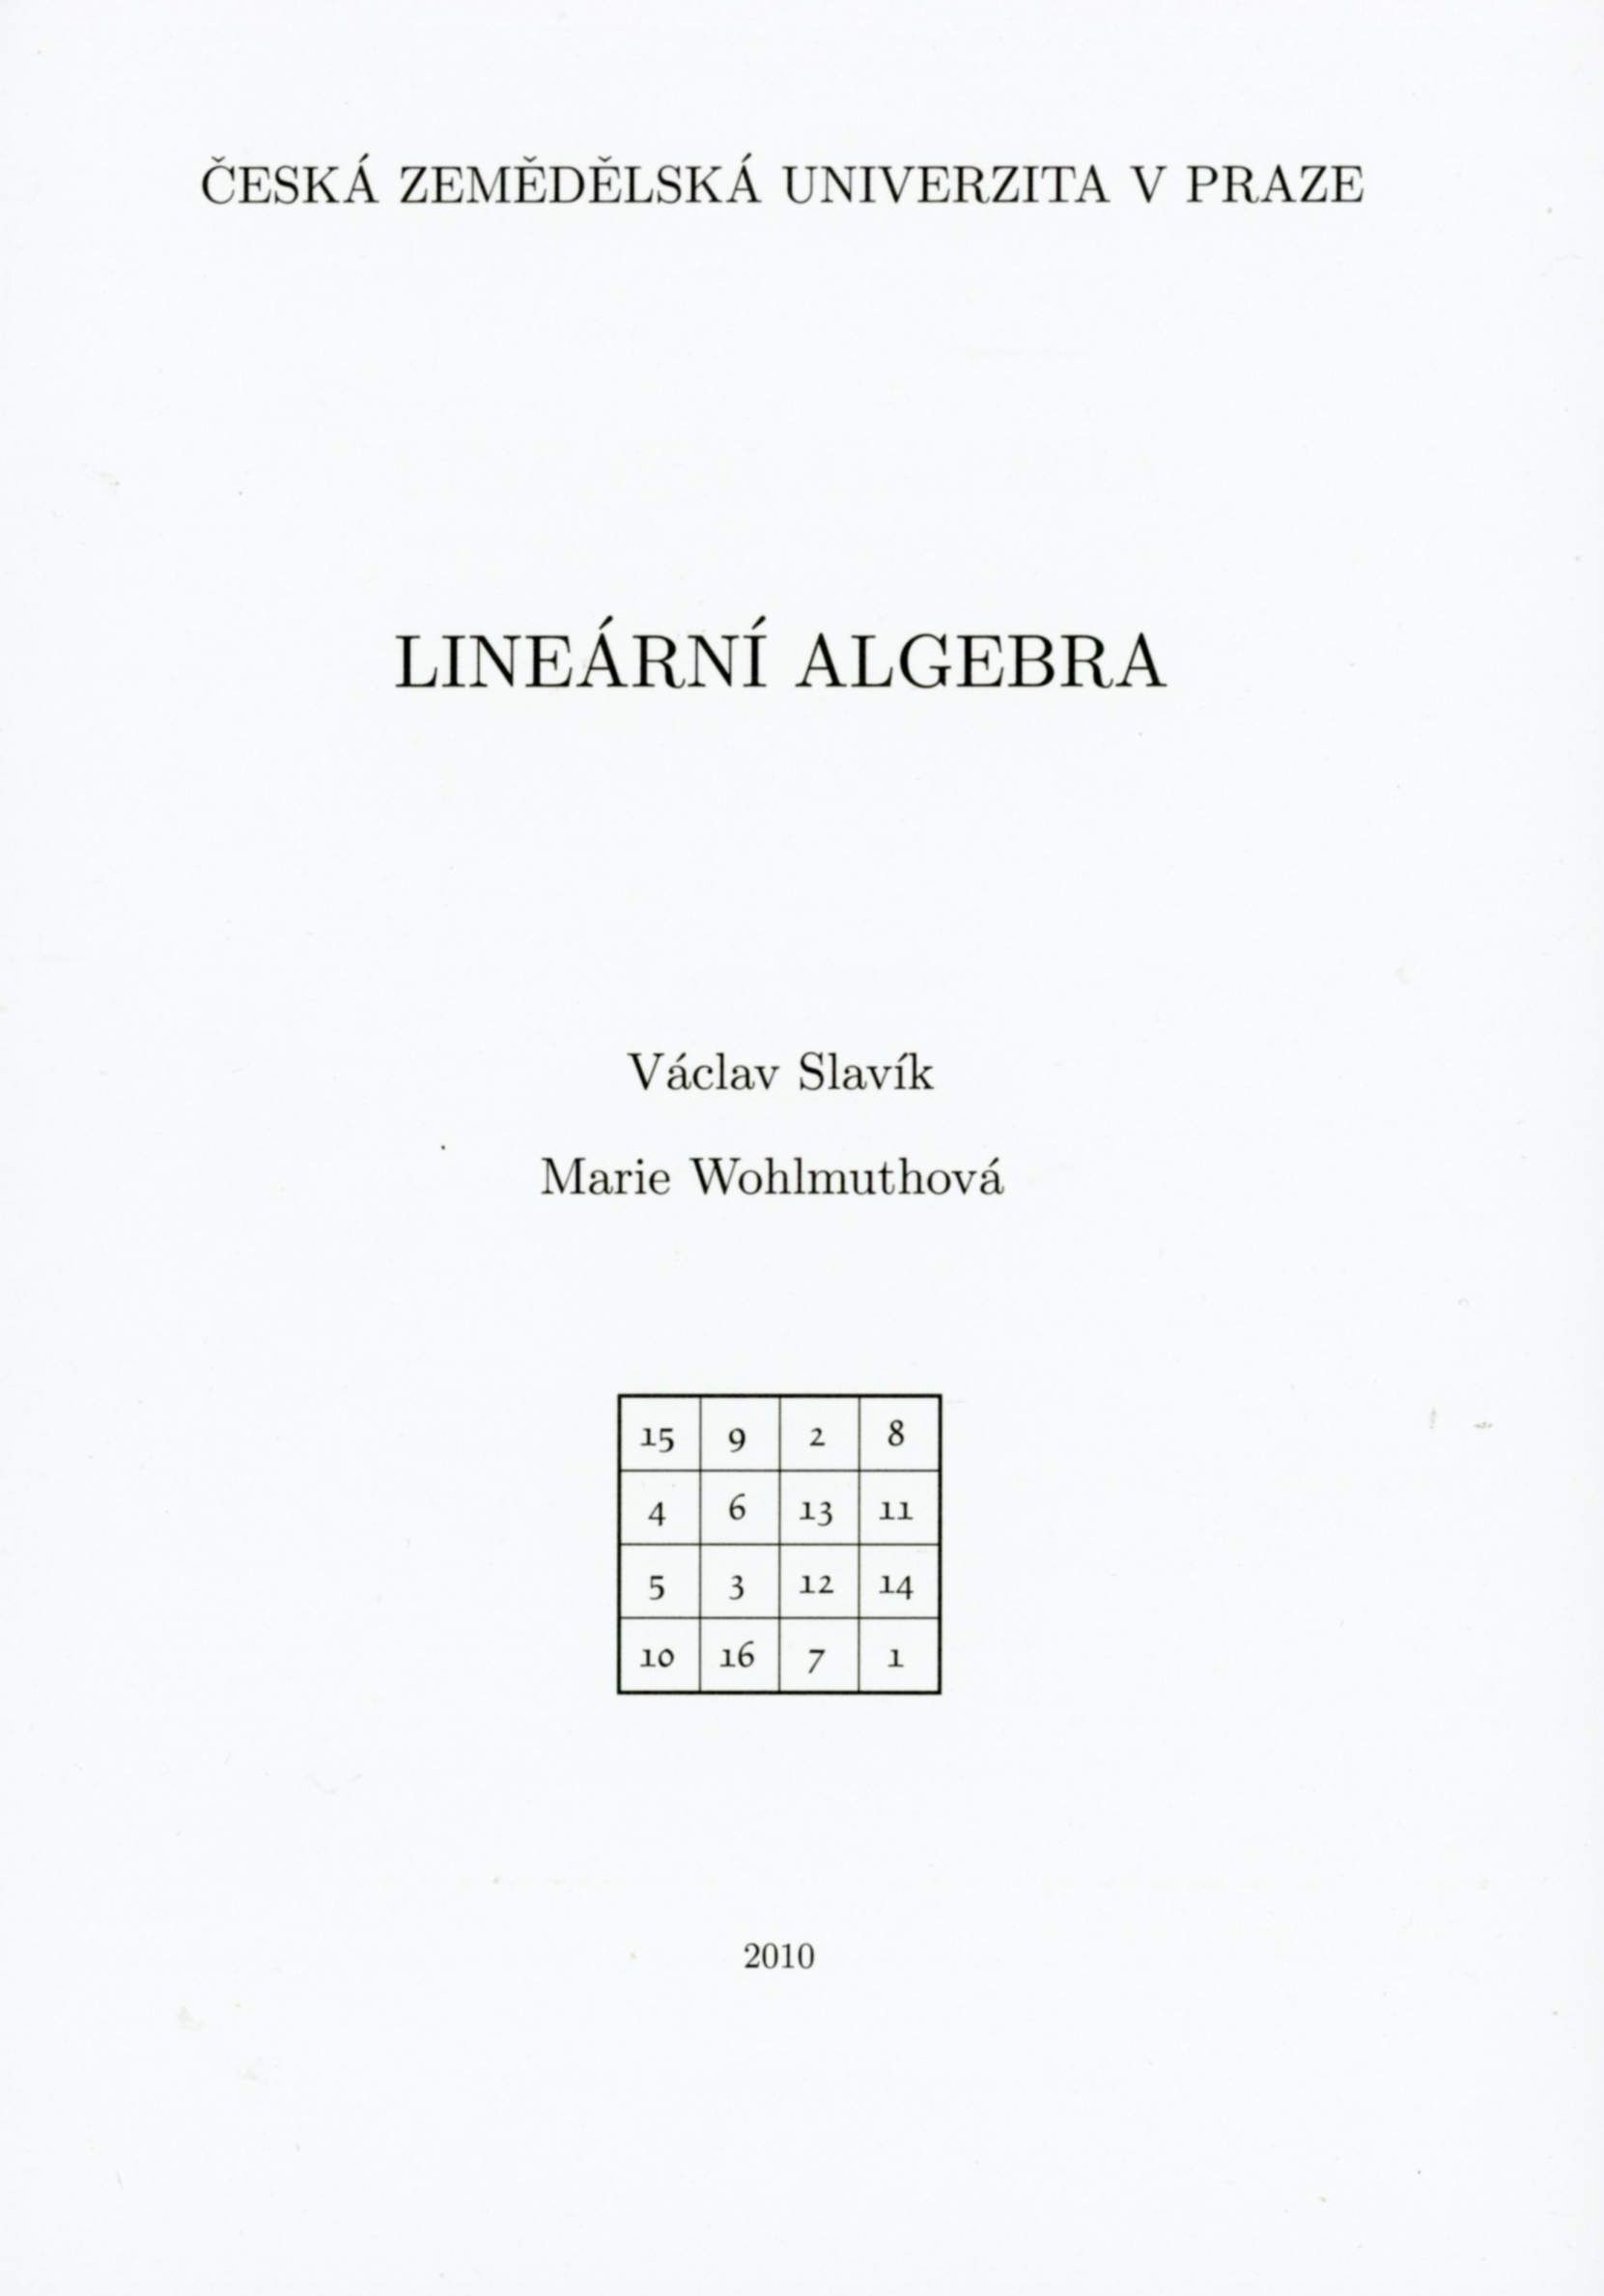 Lineární algebra, 313